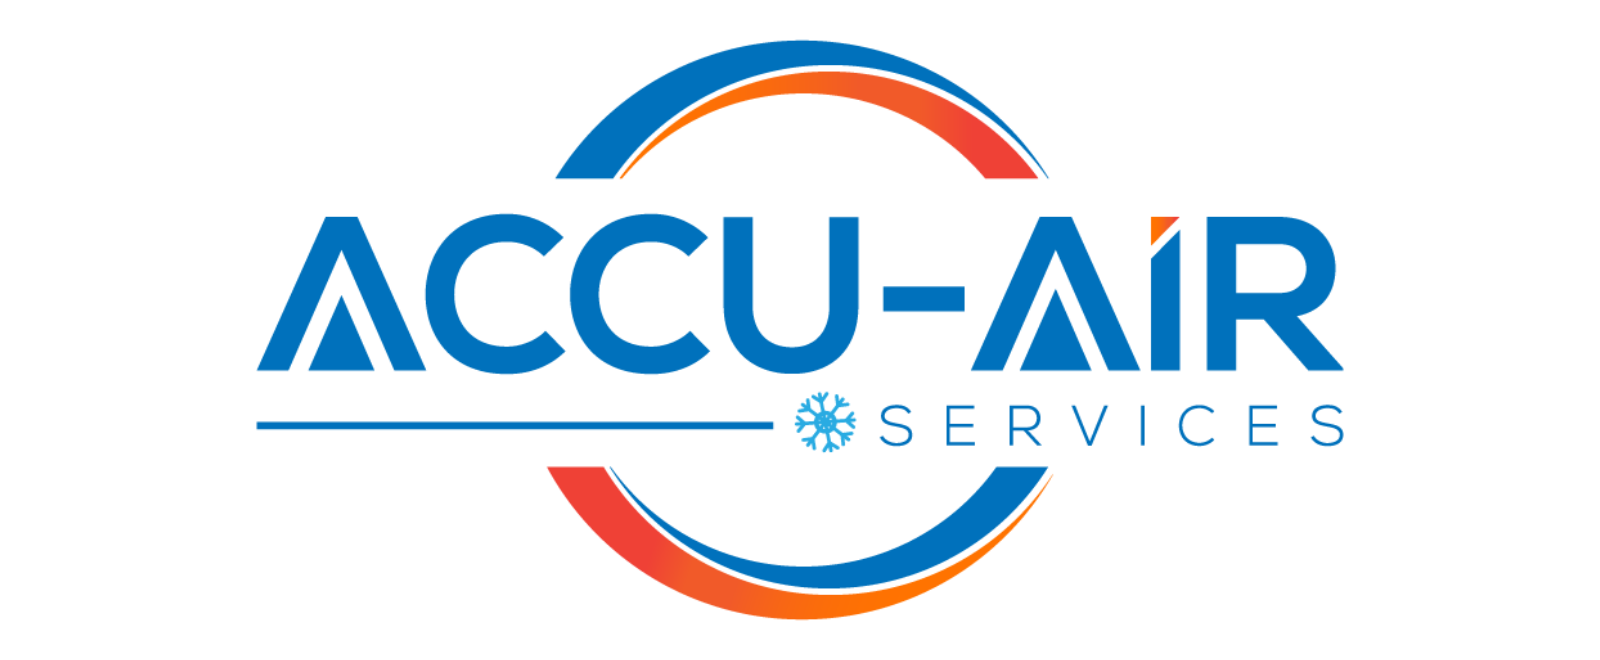 ACCU-Air Services